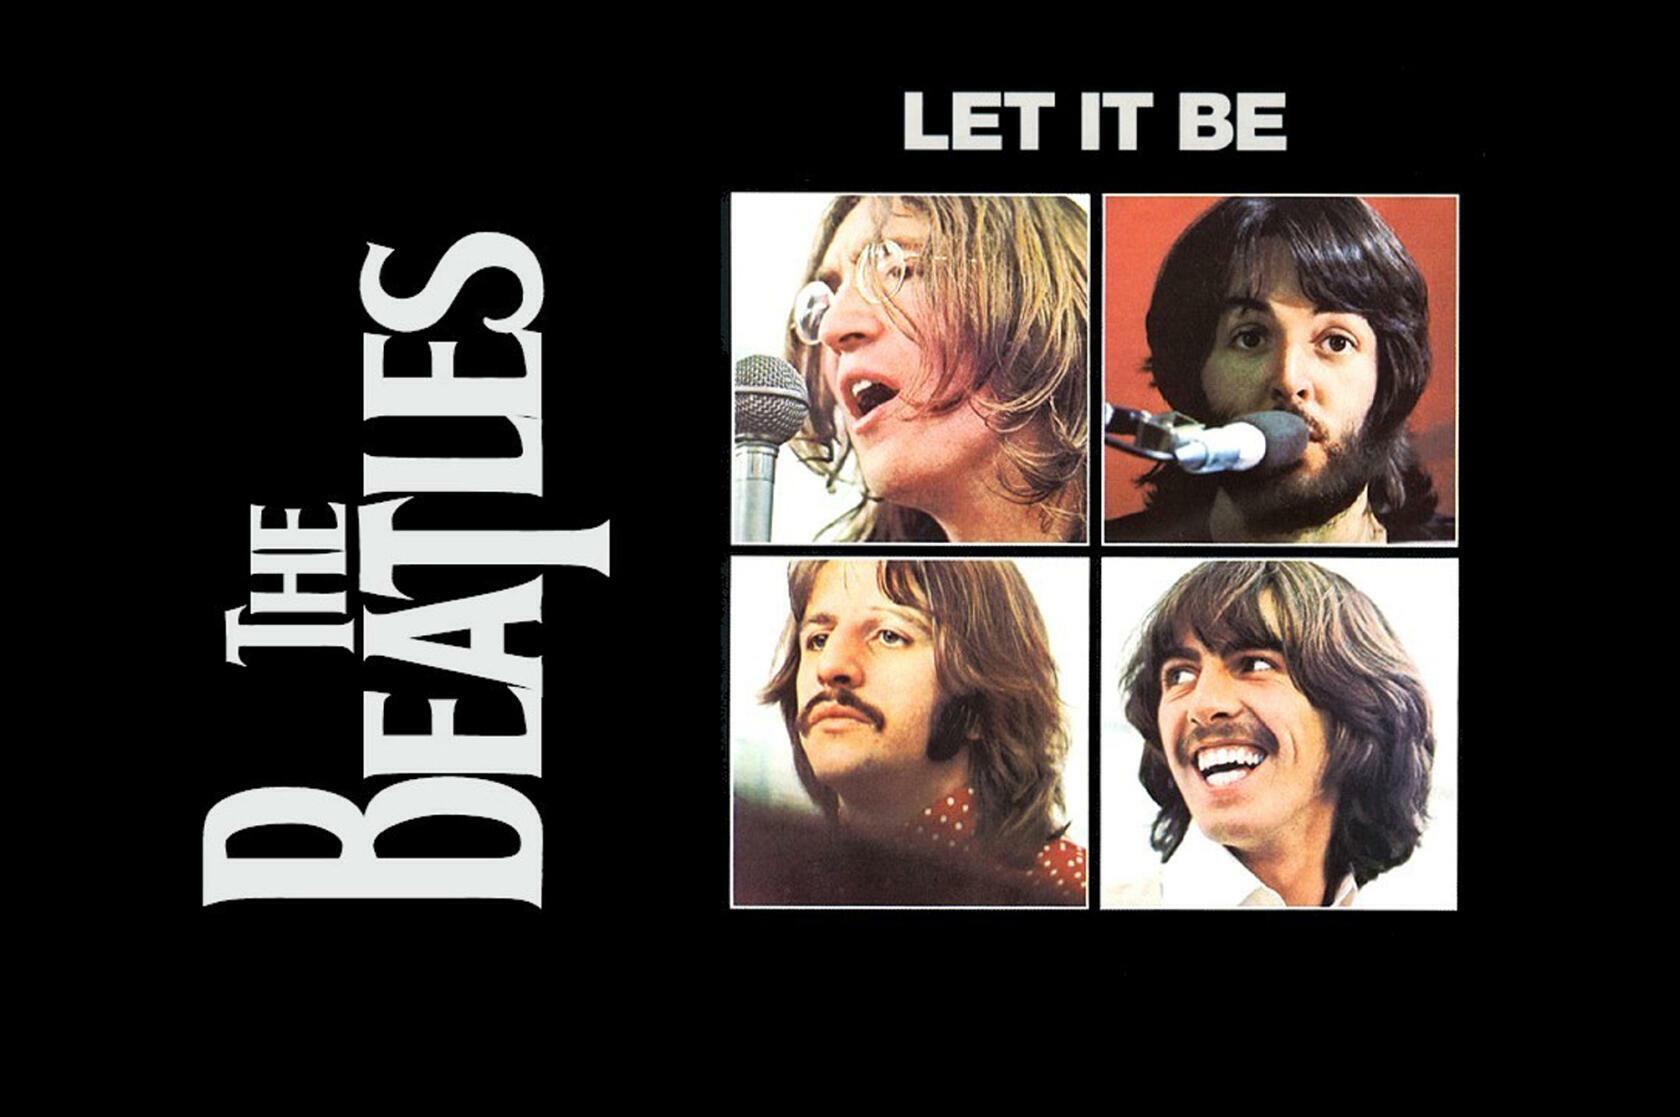 Песня лет ит би. The Beatles Let it be 1970 обложка. Пол Маккартни 1970 Let it be. Обложка альбома Битлз лет ИТ би. Обложка альбома Битлз Let it be.